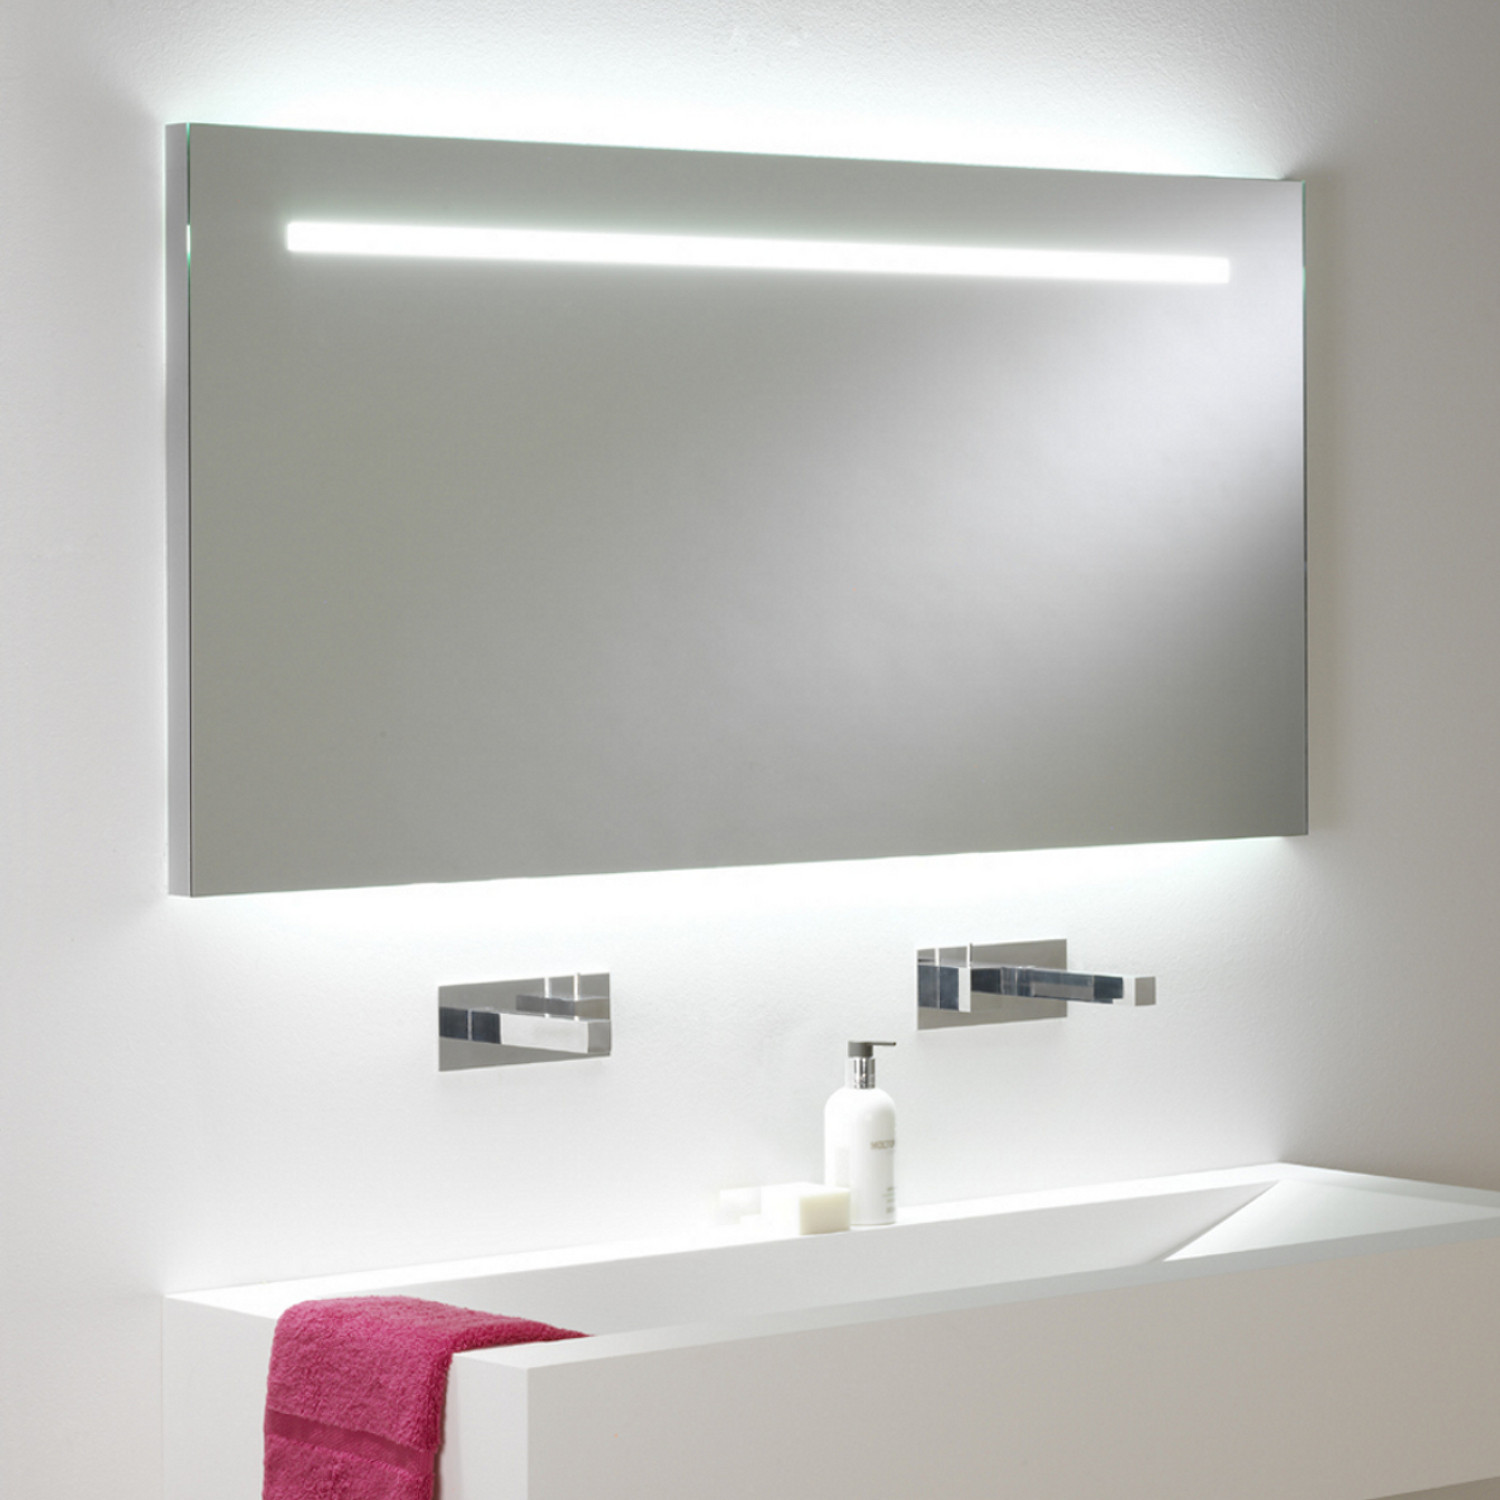 Badezimmerspiegel Mit Beleuchtung
 Großer eindrucksvoller Badspiegel mit Beleuchtung und